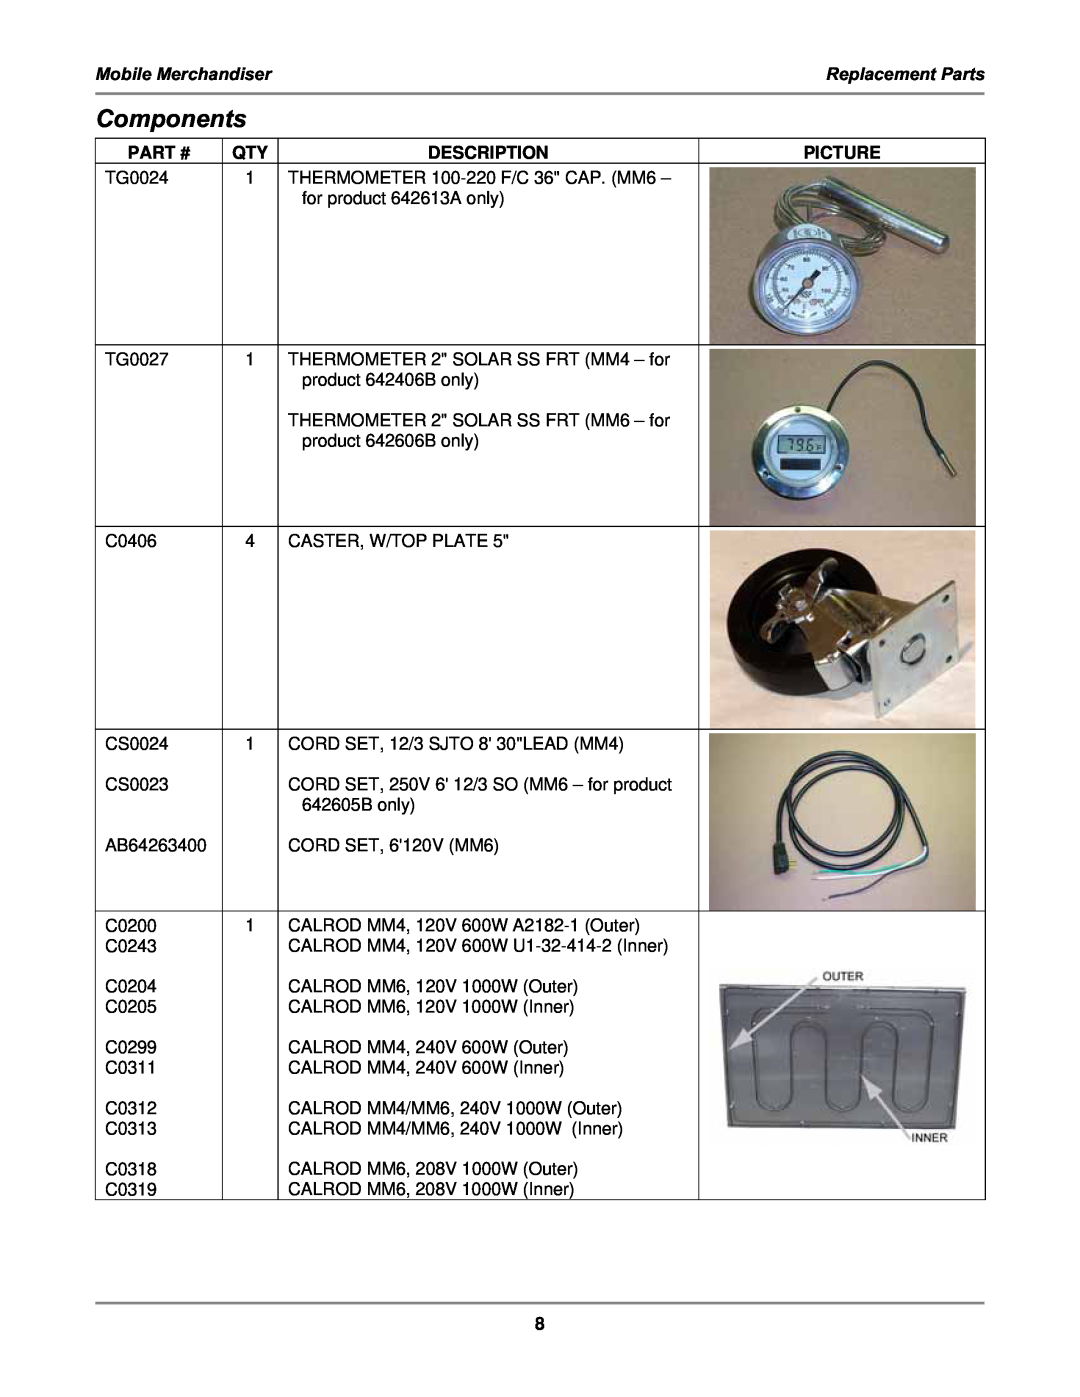 Bakers Pride Oven MM4, MM6 service manual Components, Picture, Mobile Merchandiser, Replacement Parts, Part #, Description 